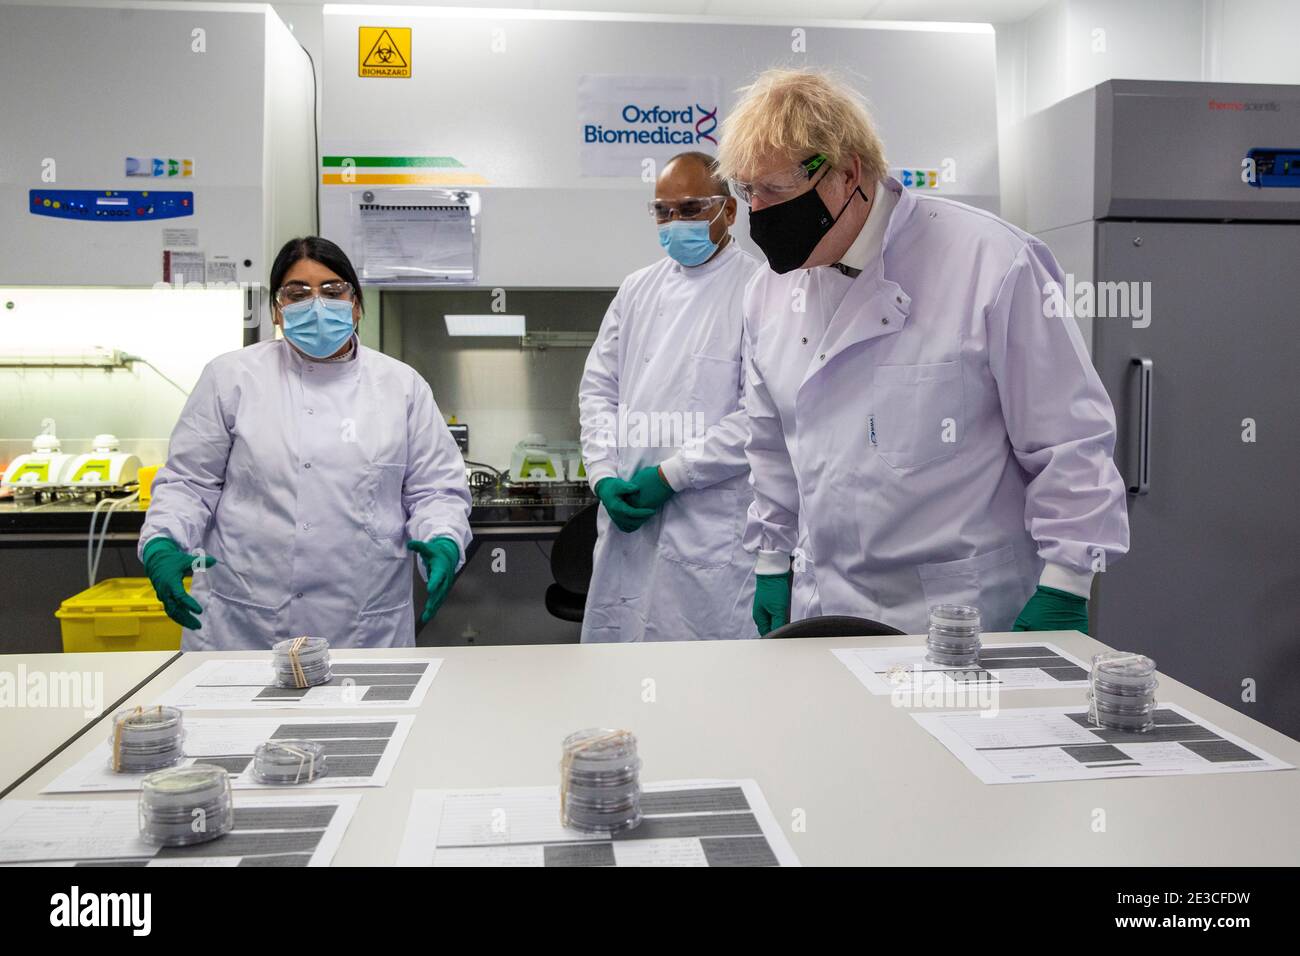 Le Premier ministre Boris Johnson s'entretient avec Dipesh Sonar (au centre) et Nisha Gill dans le laboratoire de contrôle de la qualité, où des lots de vaccins sont testés, lors d'une visite de l'usine de fabrication du vaccin Oxford/AstraZeneca à Oxford Biomedica dans l'Oxfordshire. Date de la photo: Lundi 18 janvier 2021. Banque D'Images